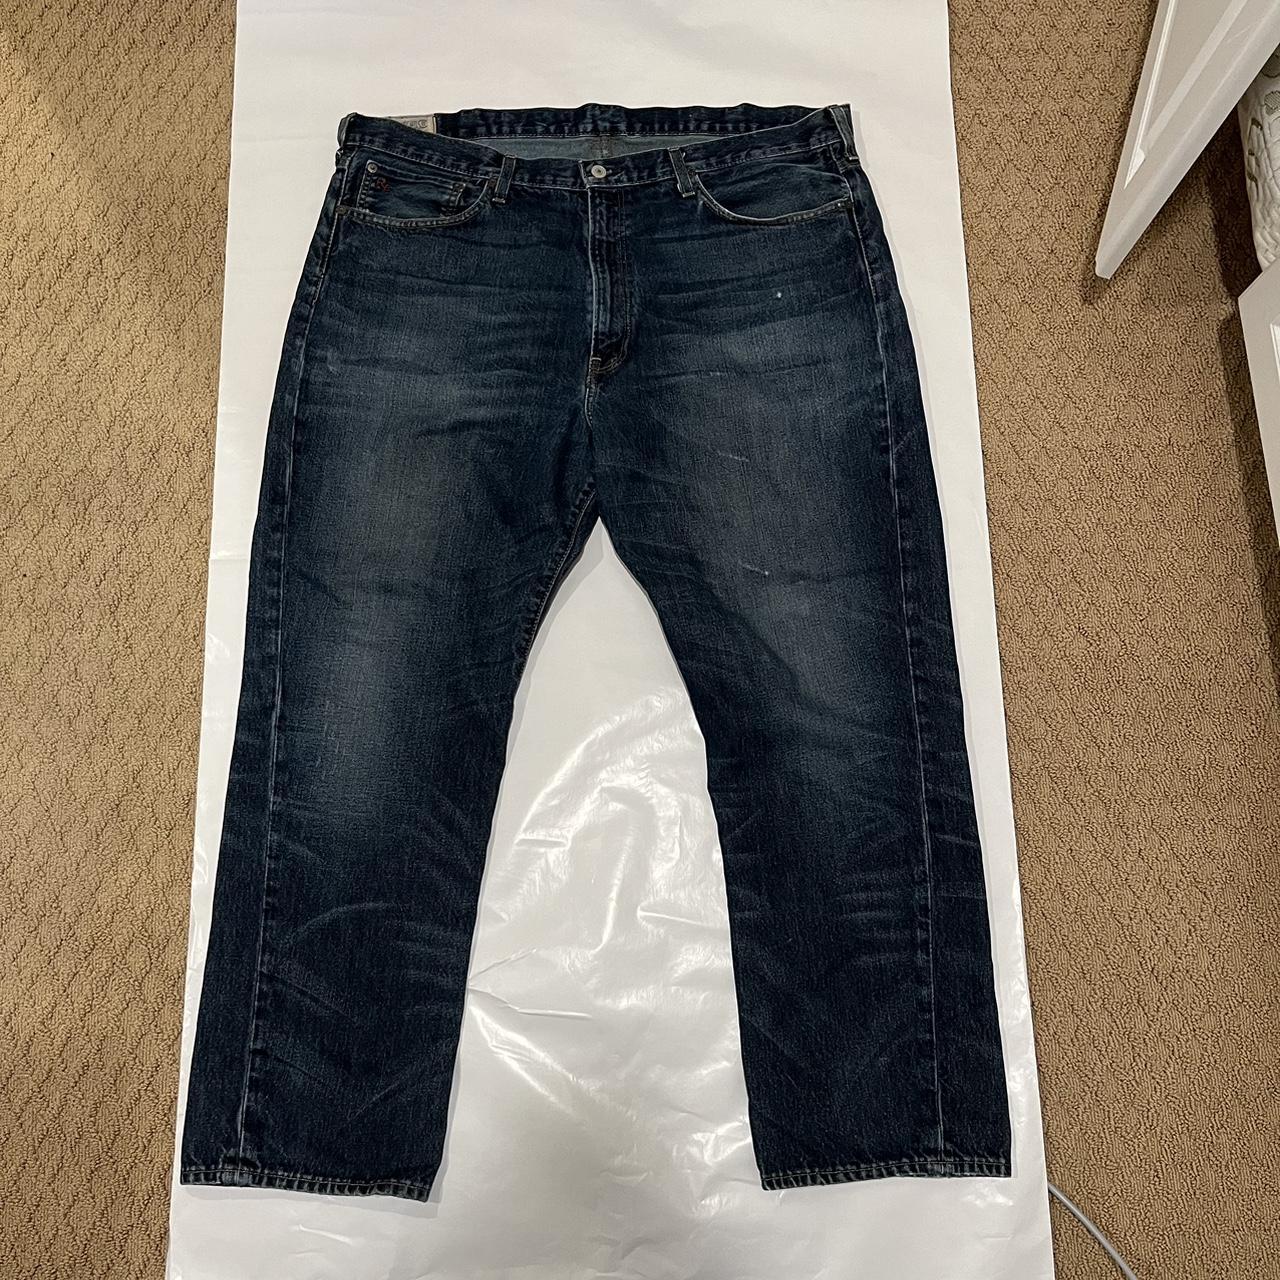 Polo Ralph Lauren Jeans, Size 40x30, Good Condition... - Depop